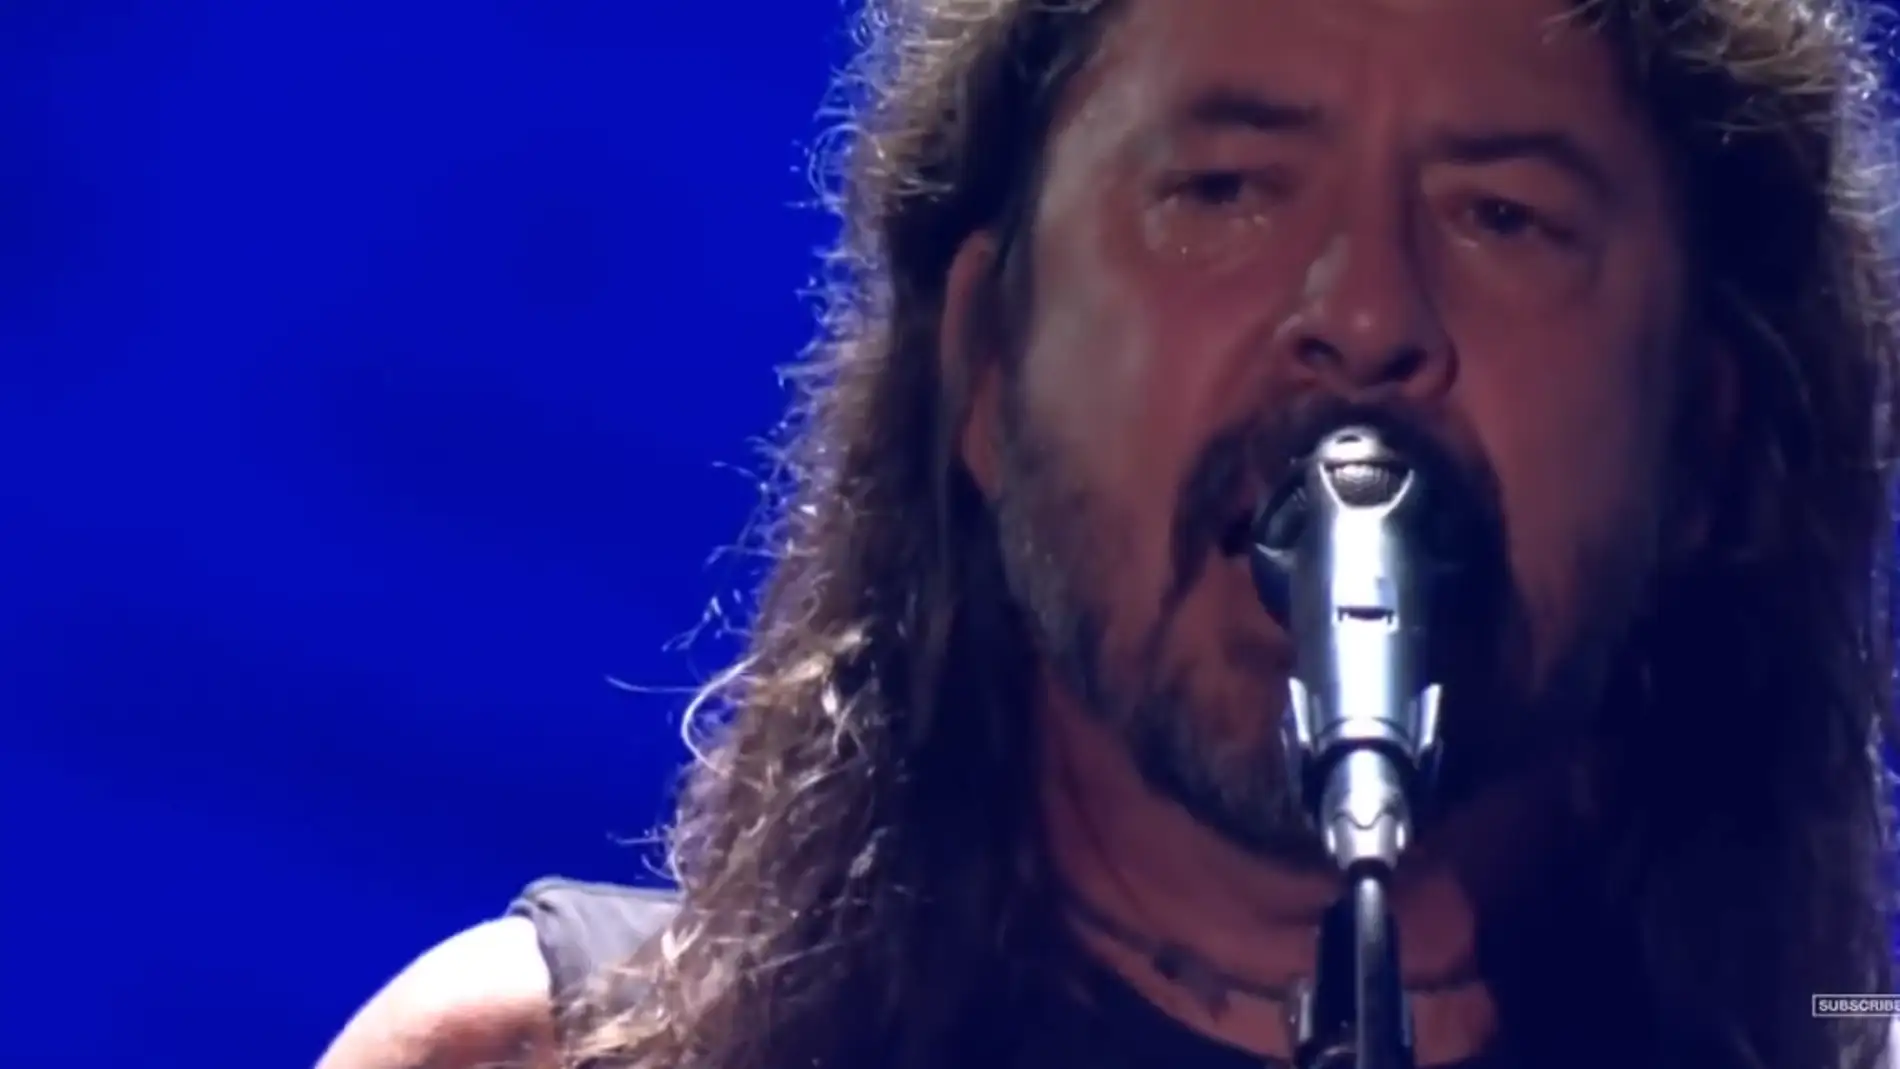 Dave Grohl llora durante el homenaje de Foo Fighters a Taylor Hawkins